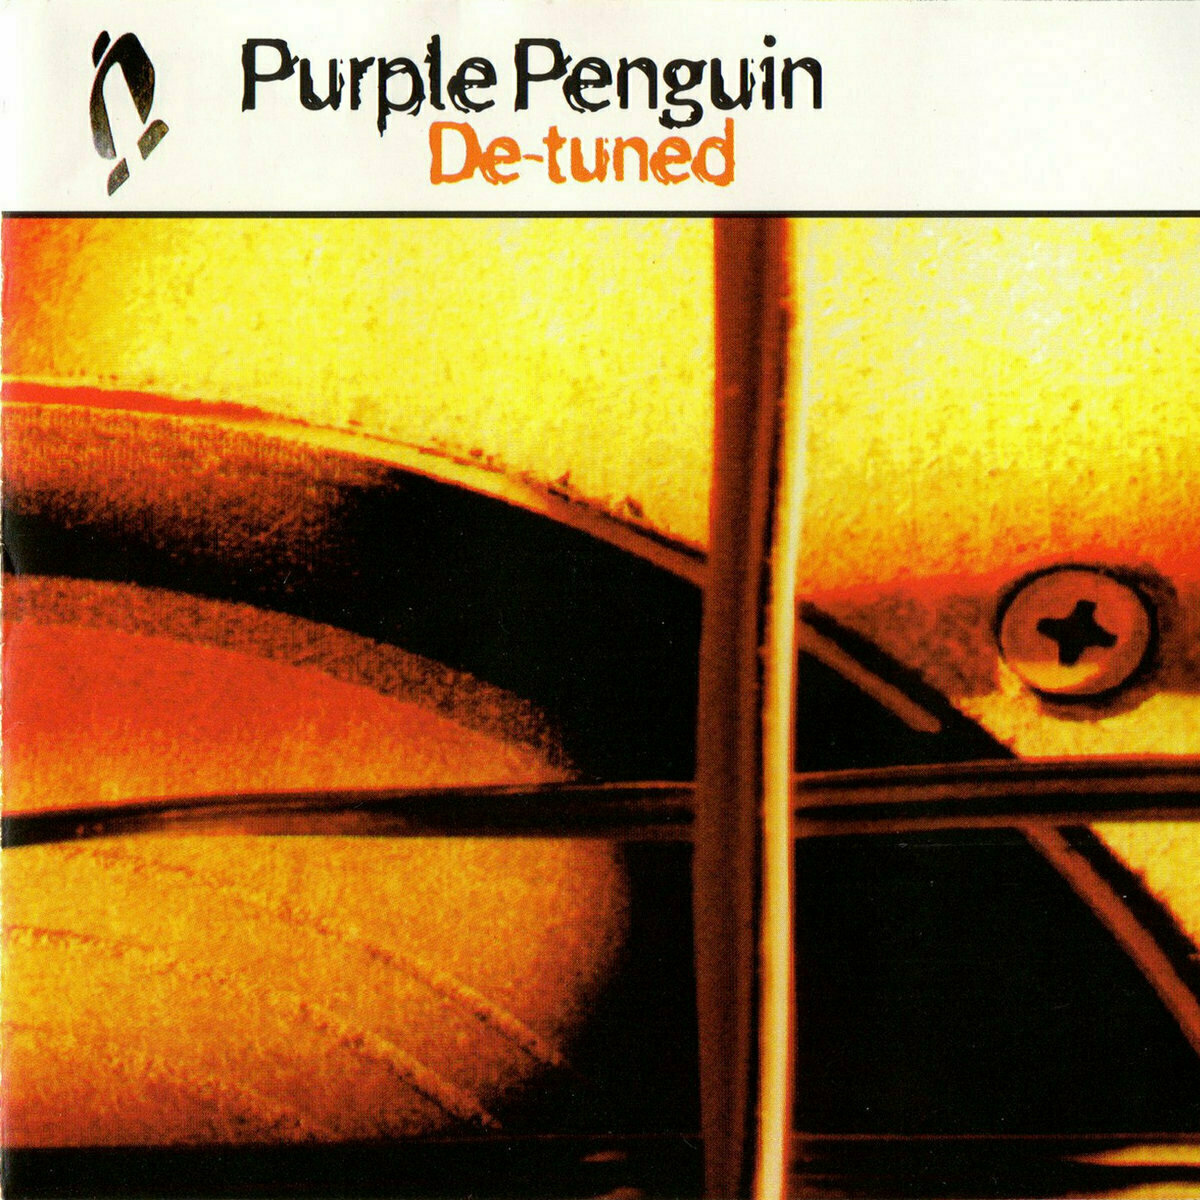 Purple penguin de tuned